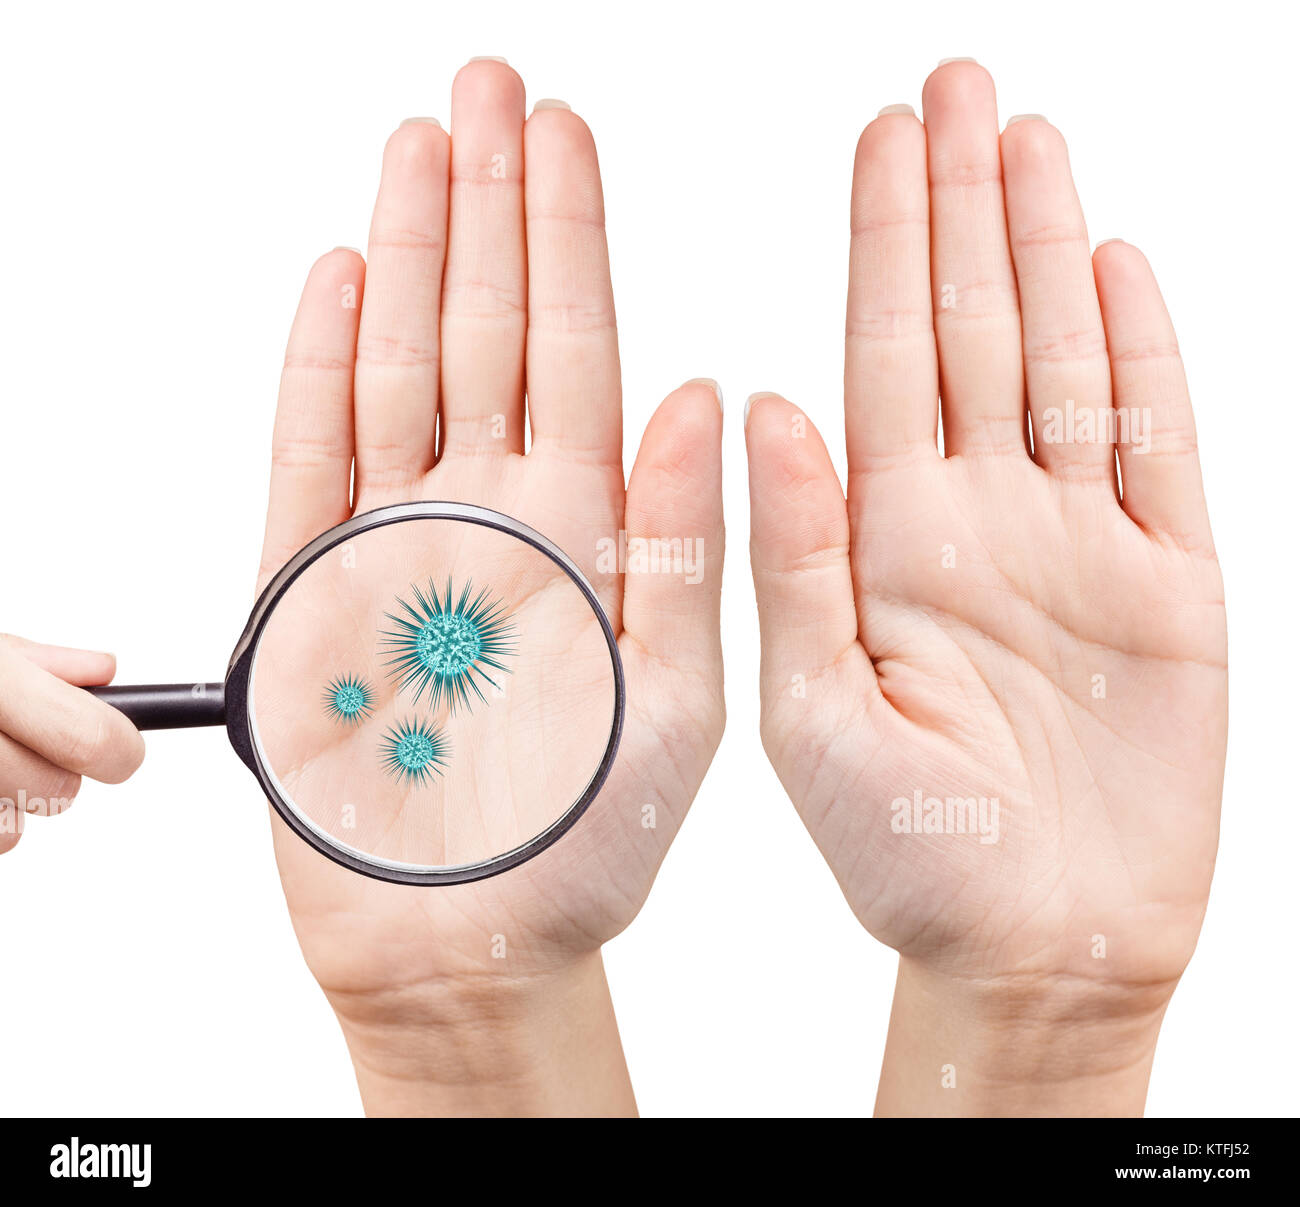 Mikroben auf Menschen Hand zeigt durch mygnifying Glas. Hygienekonzept. 3D-Rendering Stockfoto